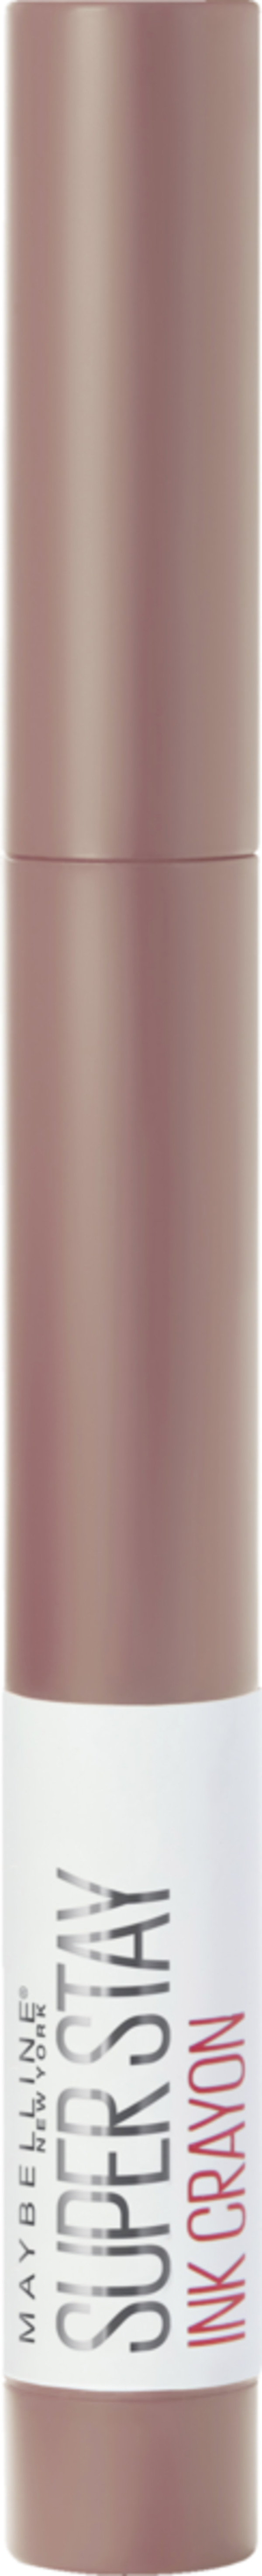 Bild 1 von Maybelline New York Lippenstift Super Stay Matte Ink Crayon 10 TRUST Y EUR/